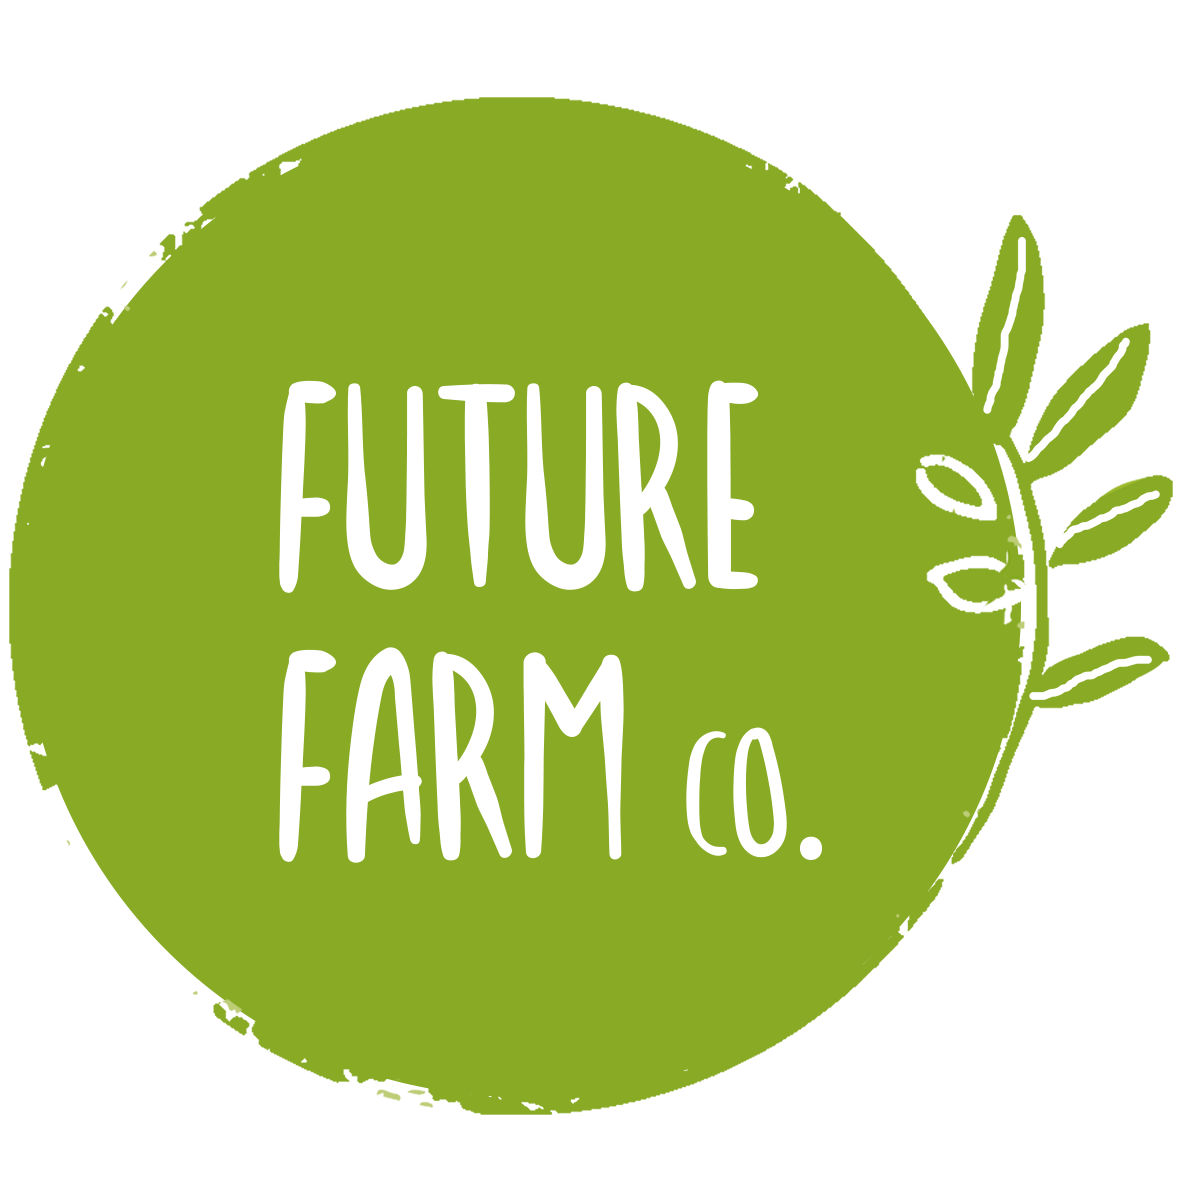 Future Farm Co. 